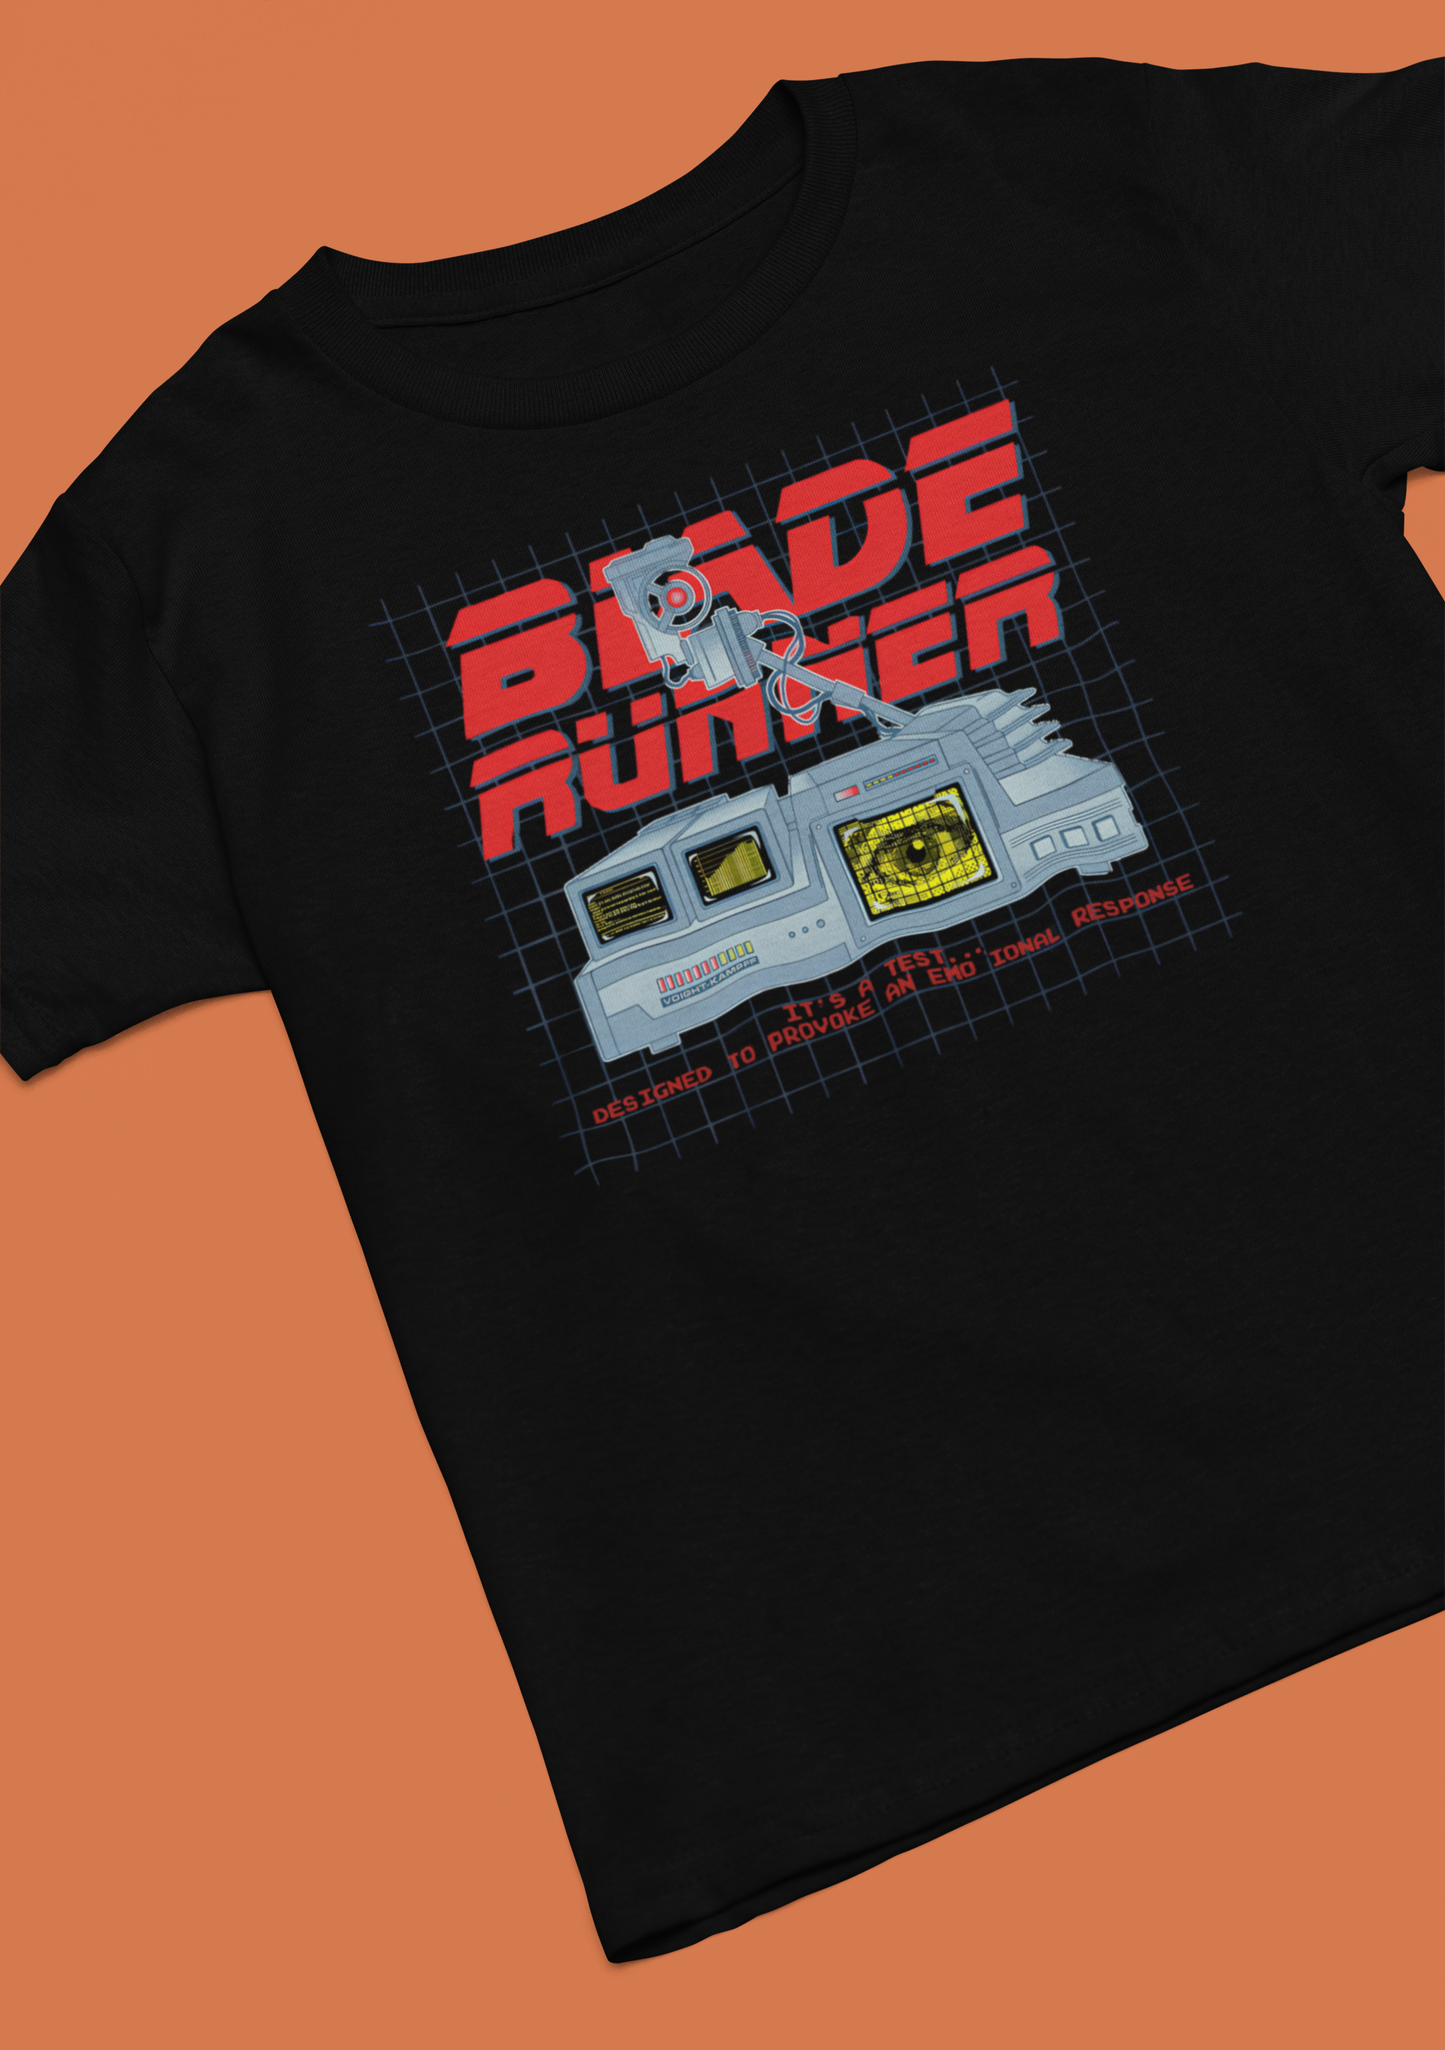 Retro Blade Runner Poster T-Shirt - Men's/Unisex